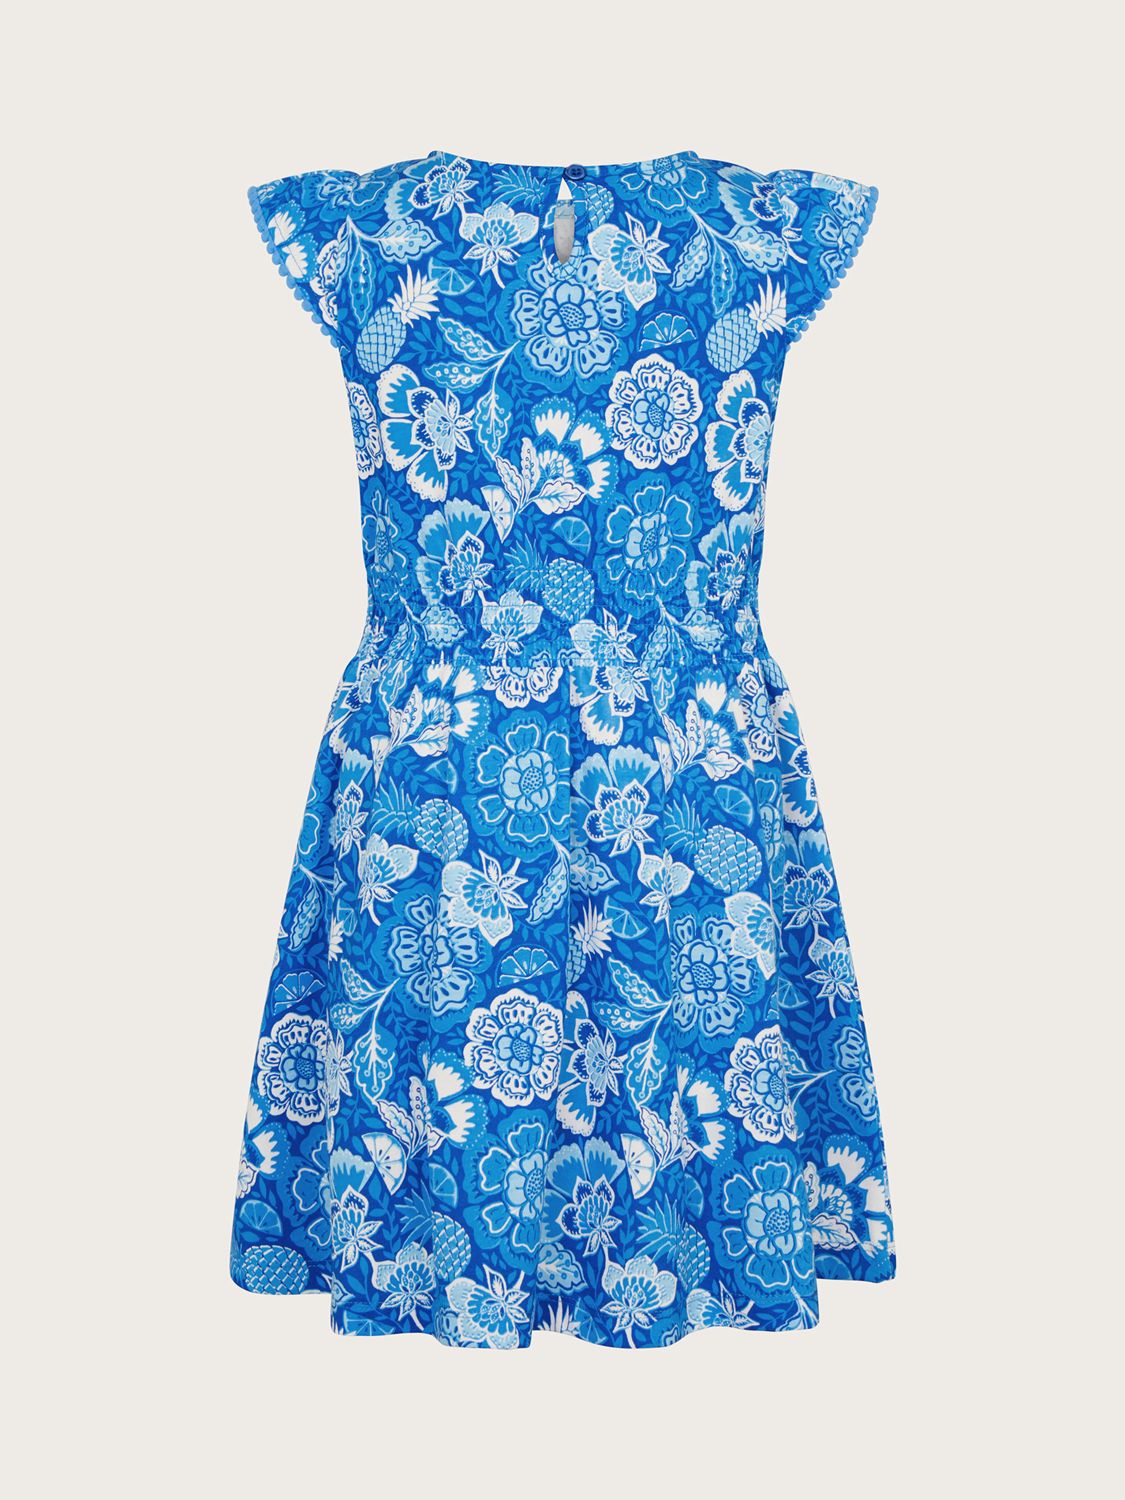 Buy Monsoon Kids' Heritage Floral Fruit Print Dress, Blue Online at johnlewis.com